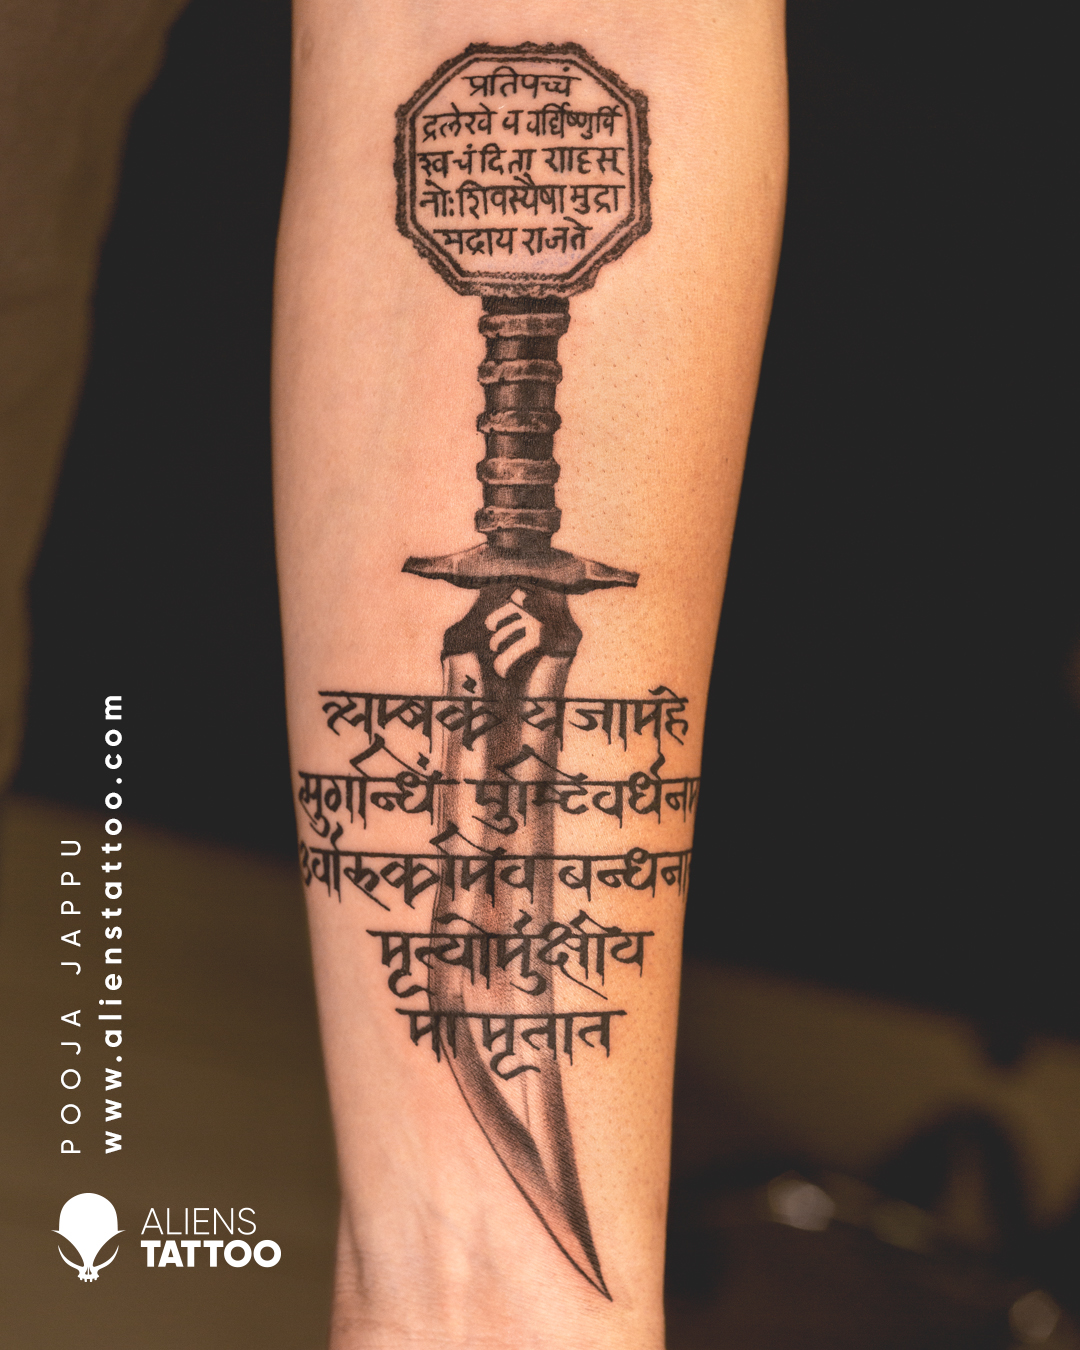 Script tattoo by Pooja Jappu by Javagreeen on DeviantArt